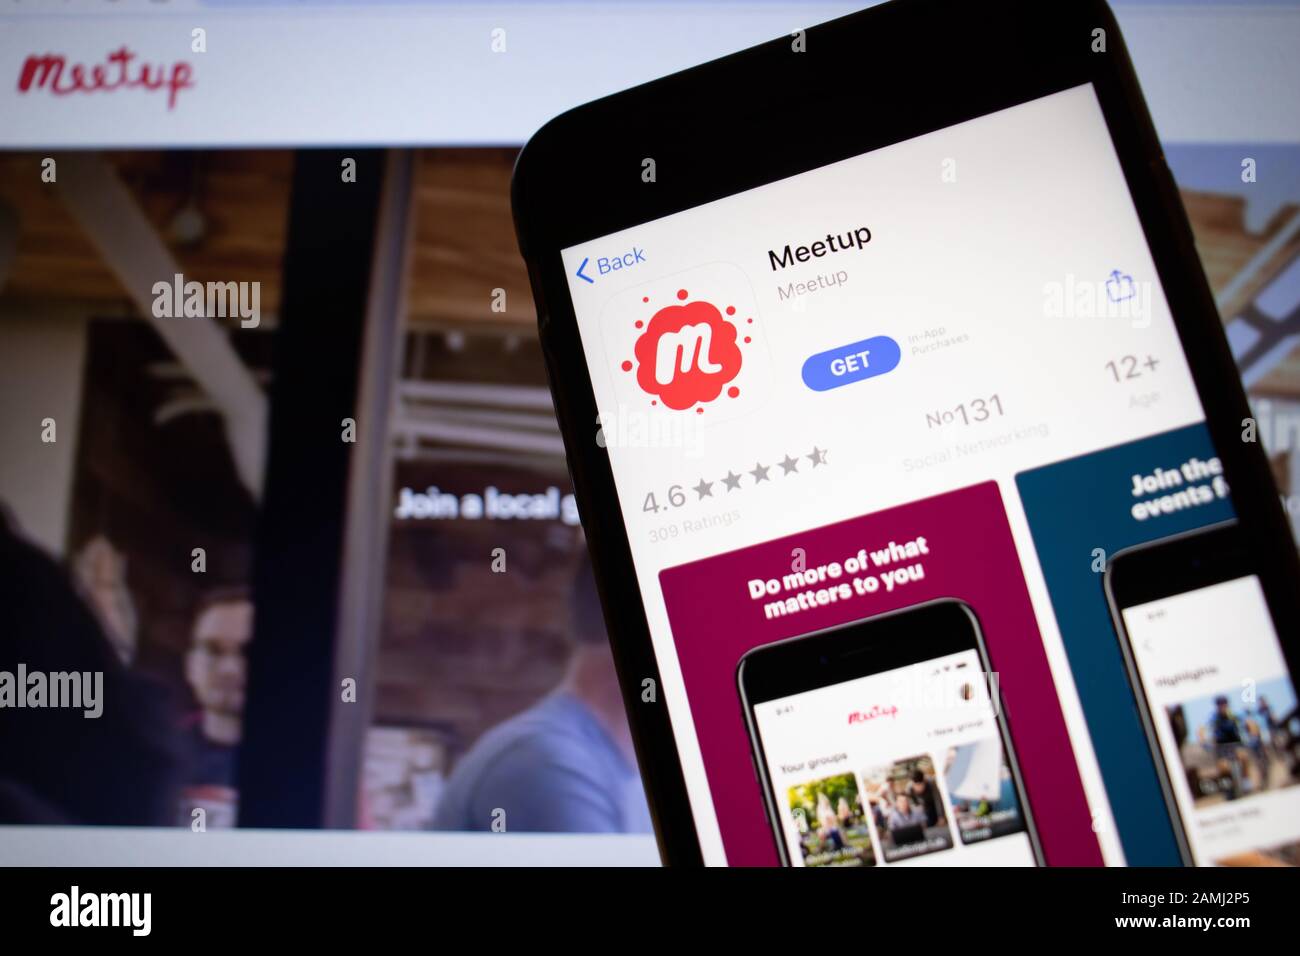 Saint-Pétersbourg, Russie - 10 janvier 2020: Téléphone mobile avec icône Meetup sur écran de gros plan avec site sur ordinateur portable, éditorial illustratif Banque D'Images